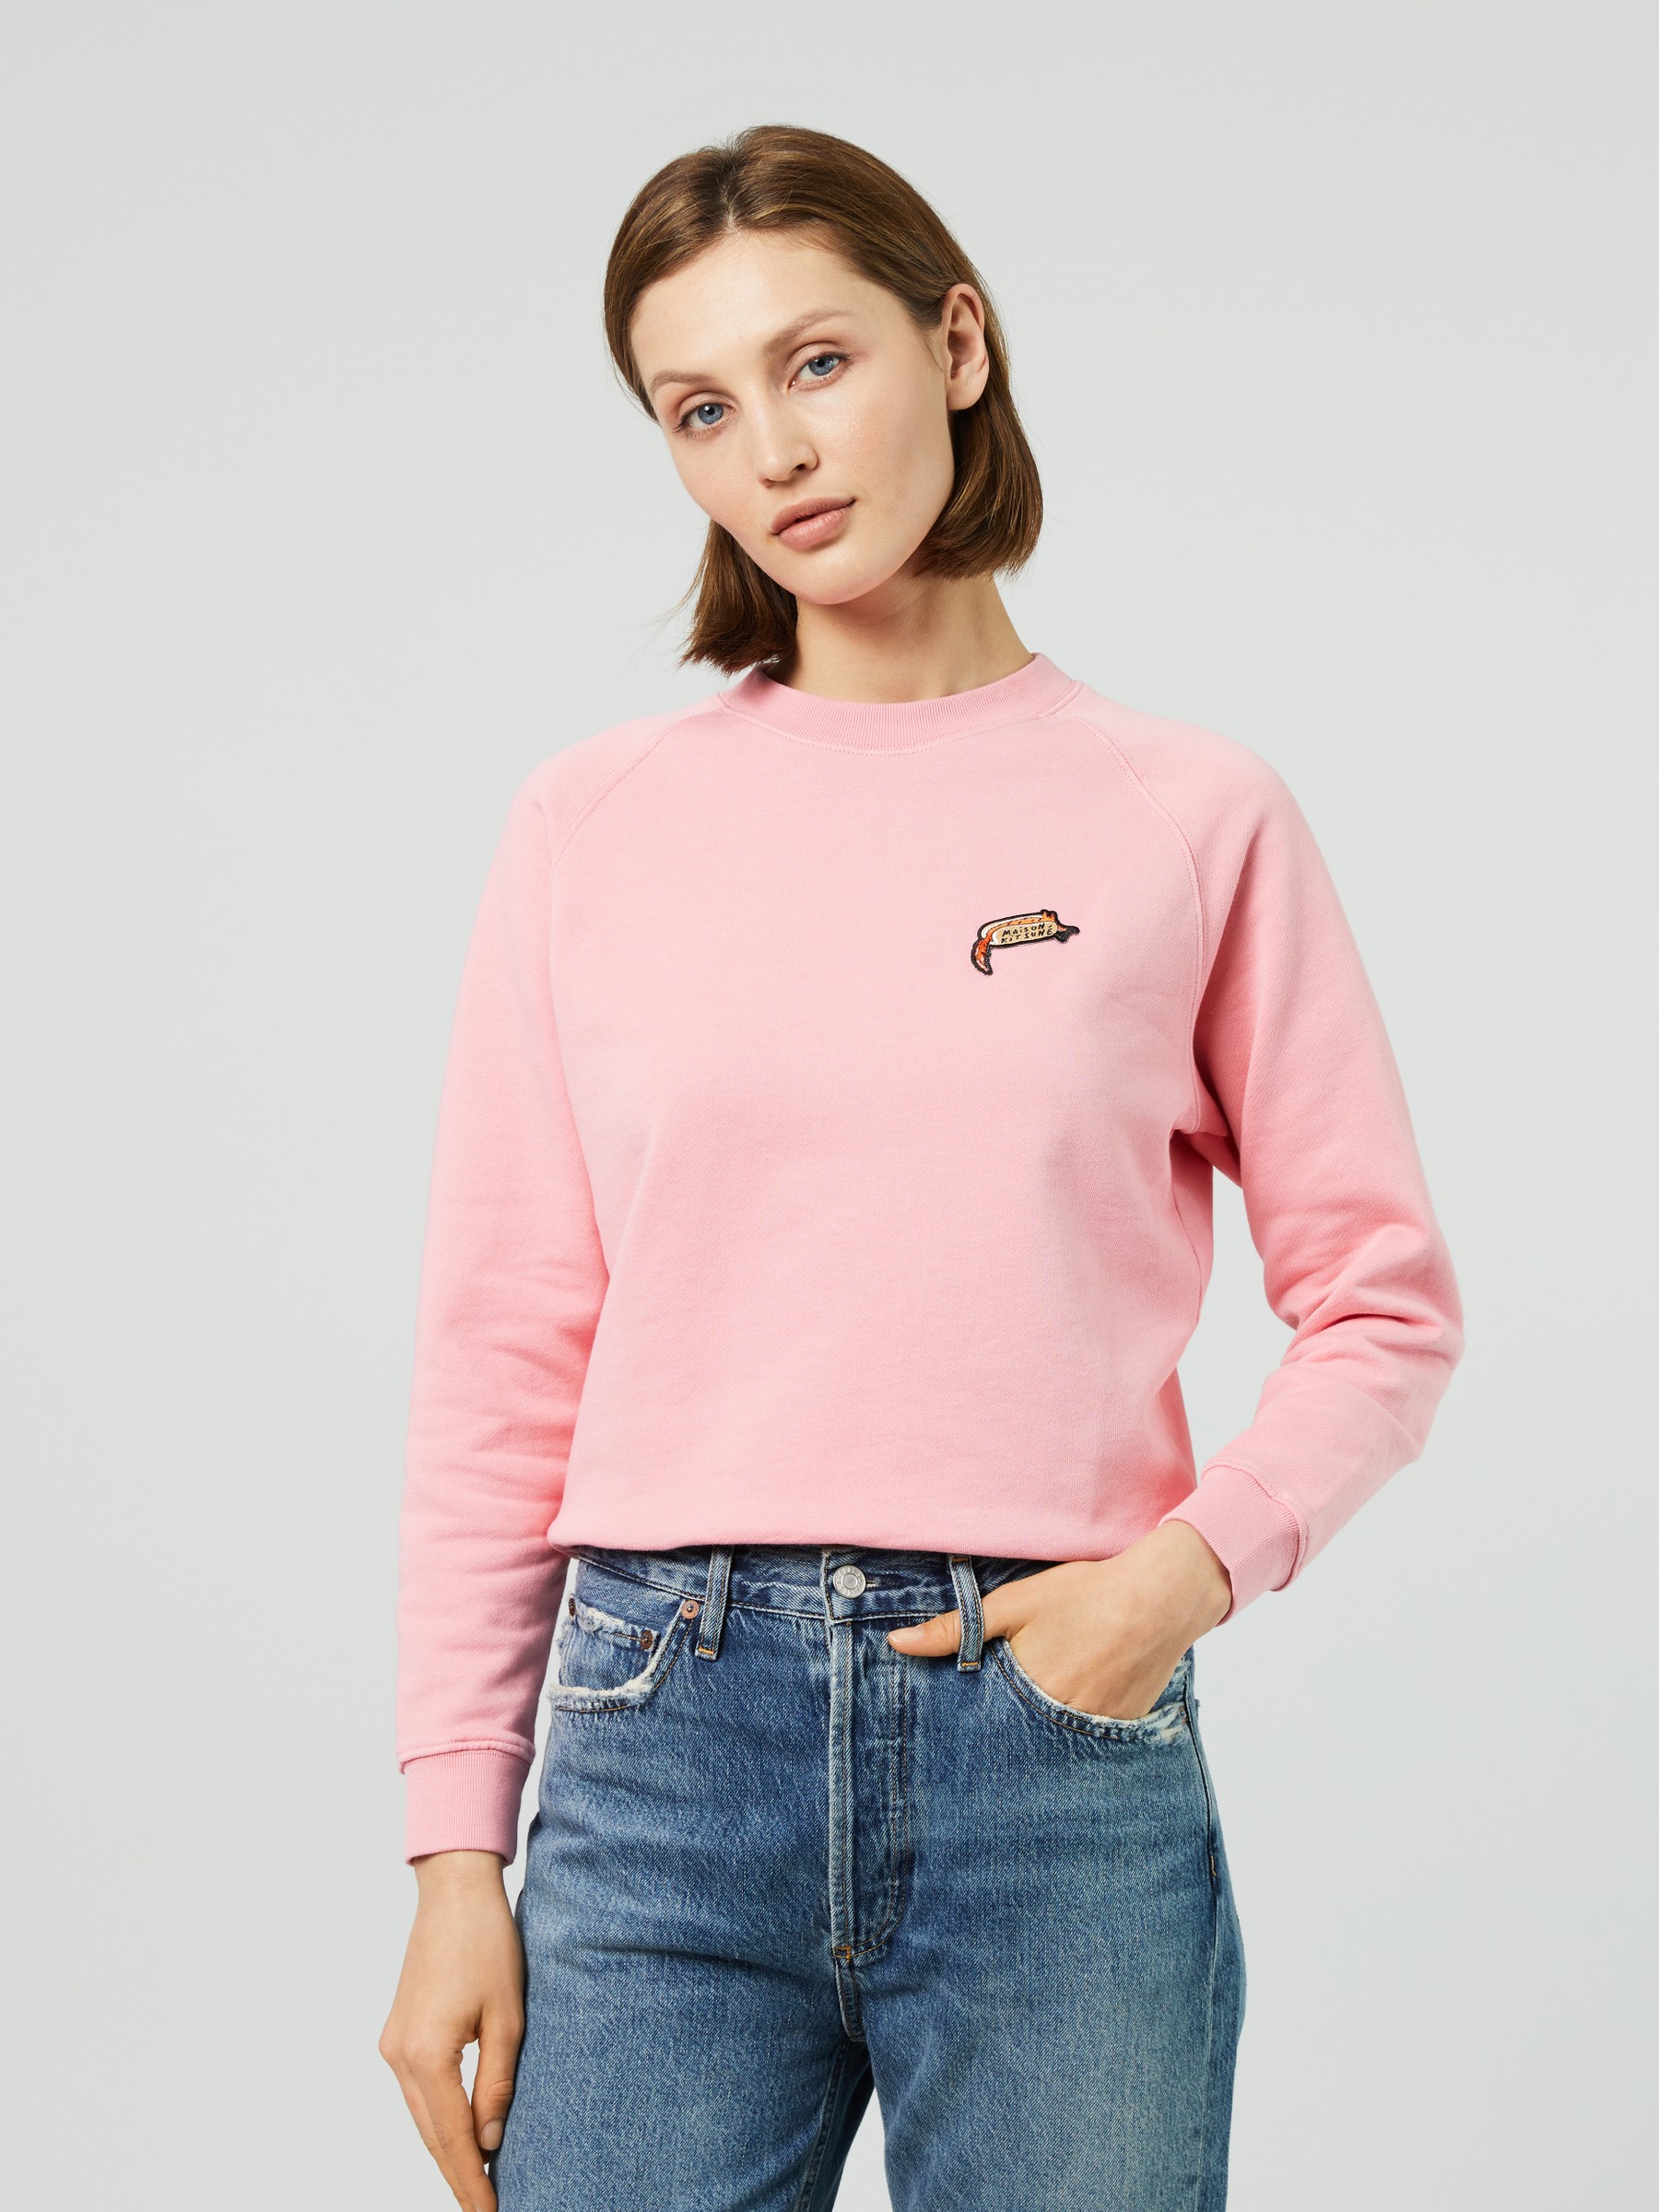 Maison Kitsuné Sweater 'Oly Hot Dog Patch Vintage' Pink | Sweatshirts